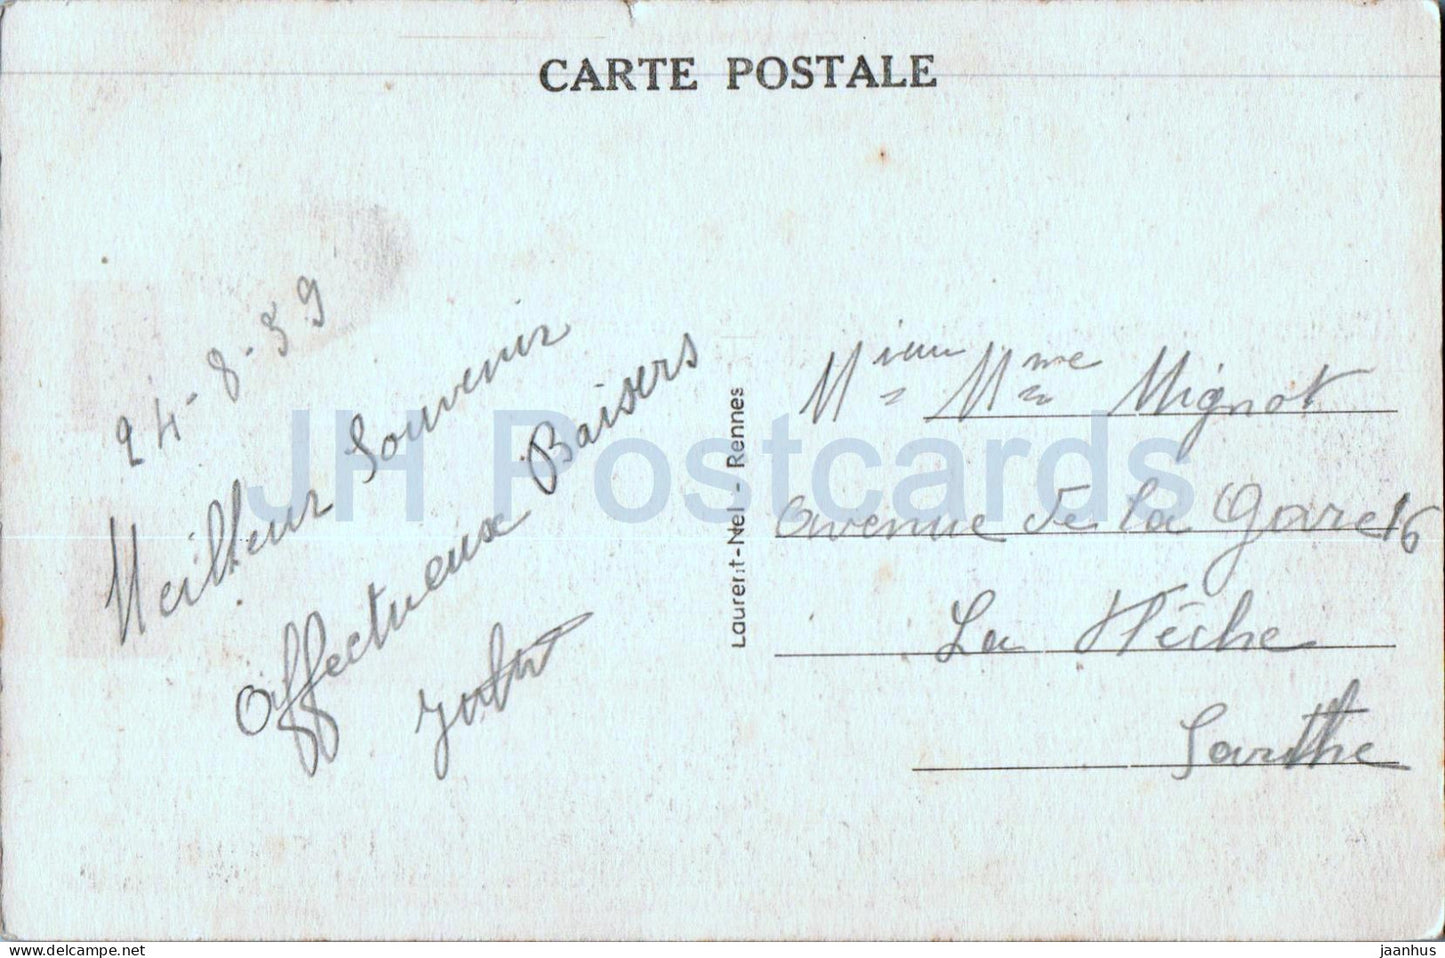 Le Pont sur la Rance au Port Saint Hubert - Cote d'Emeraude - bridge - 3748 - old postcard - 1939 - France - used